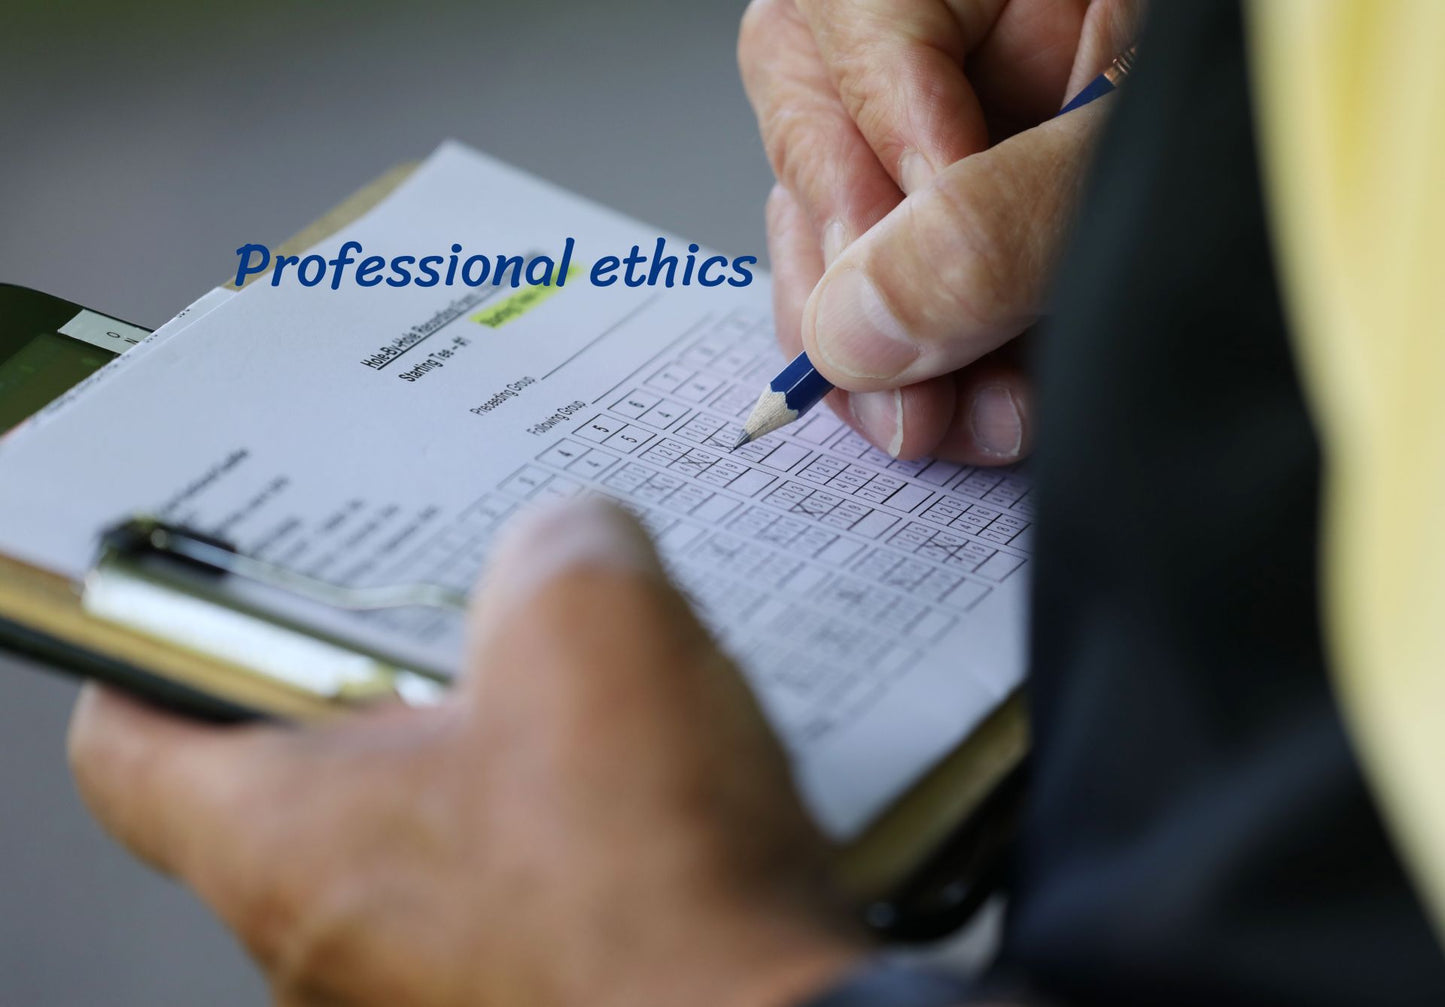 Your 2023 ethics scorecard: reflecting on professional ethics